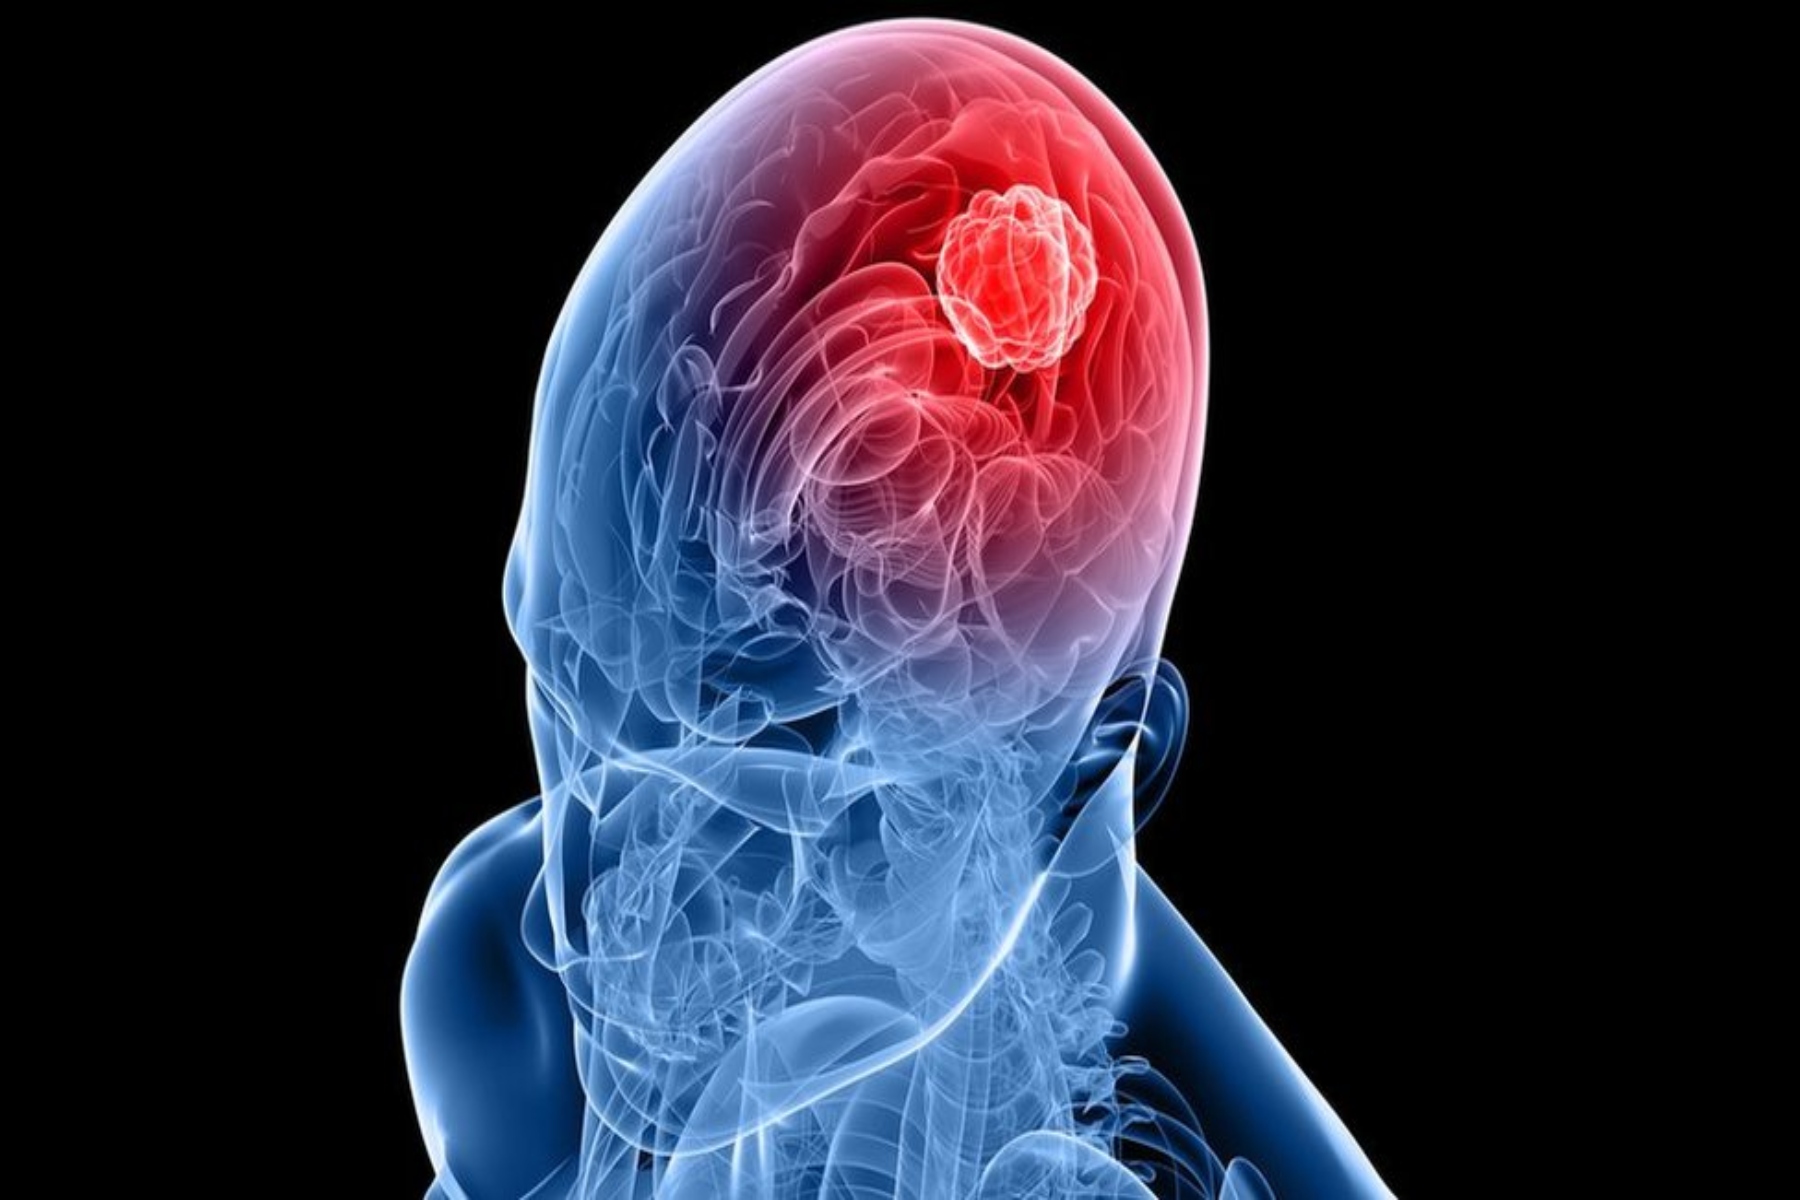 Γλοιοβλάστωμα: Τα σημάδια της επιθετικής μορφής καρκίνου του εγκεφάλου